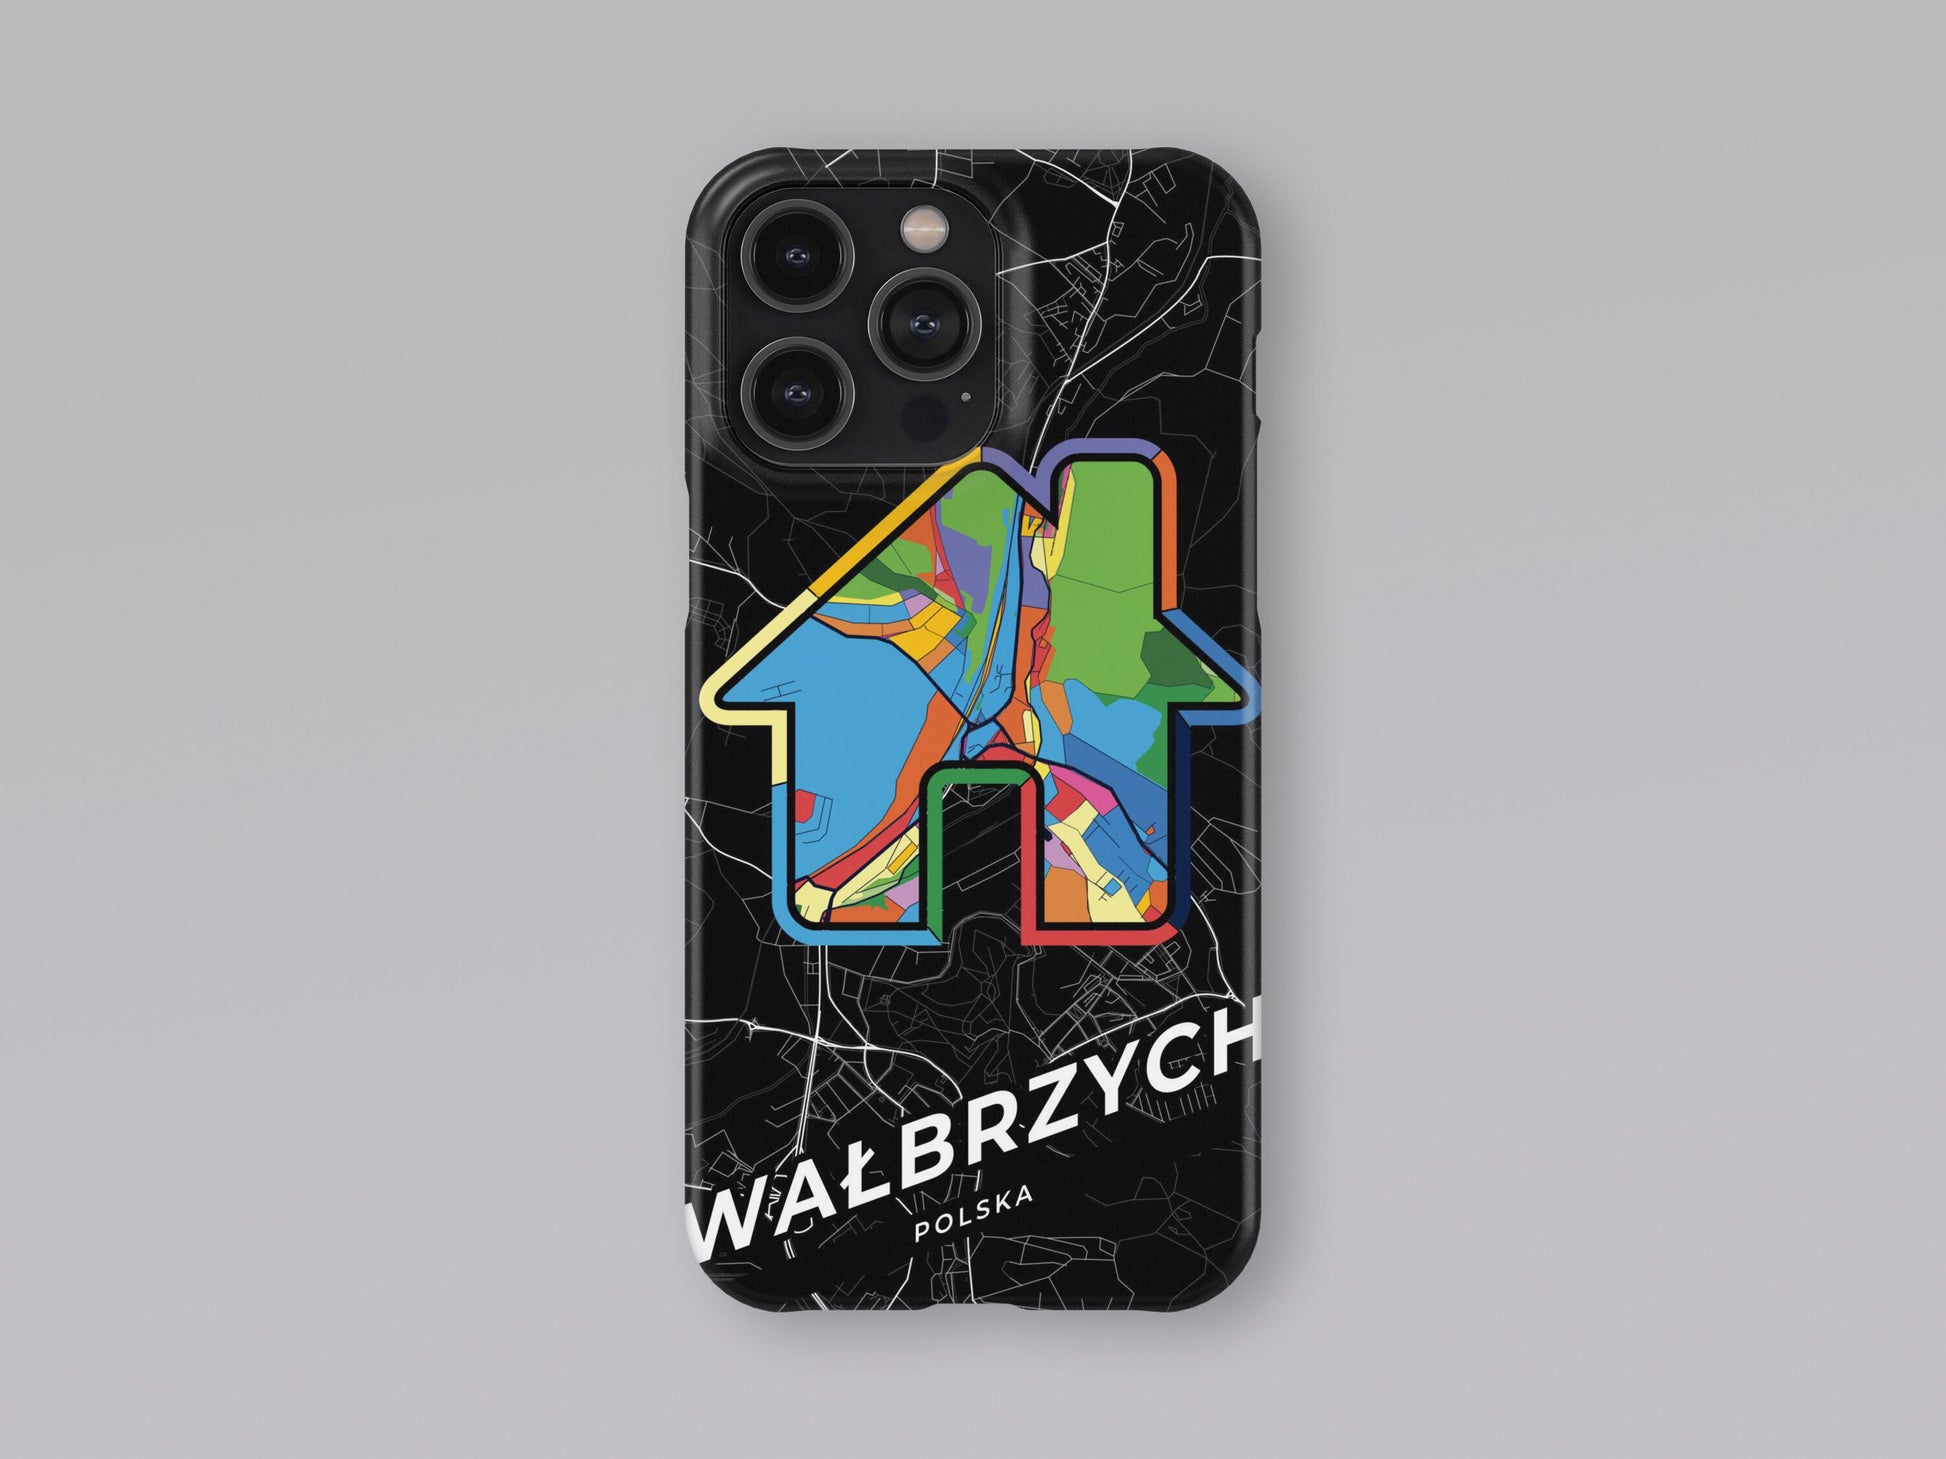 Wałbrzych Poland slim phone case with colorful icon 3